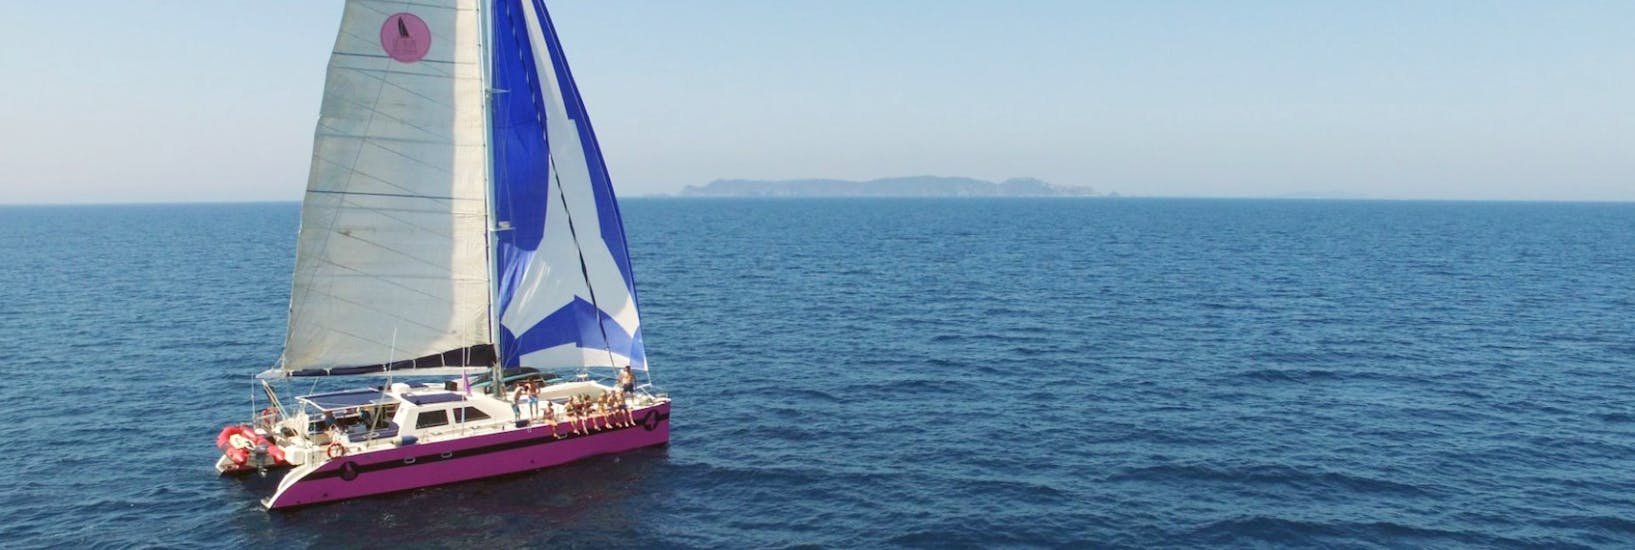 Vistas durante el paseo y fiesta en catamarán en el golfo de Saint-Tropez con Caseneuve Maxi Catamaran.